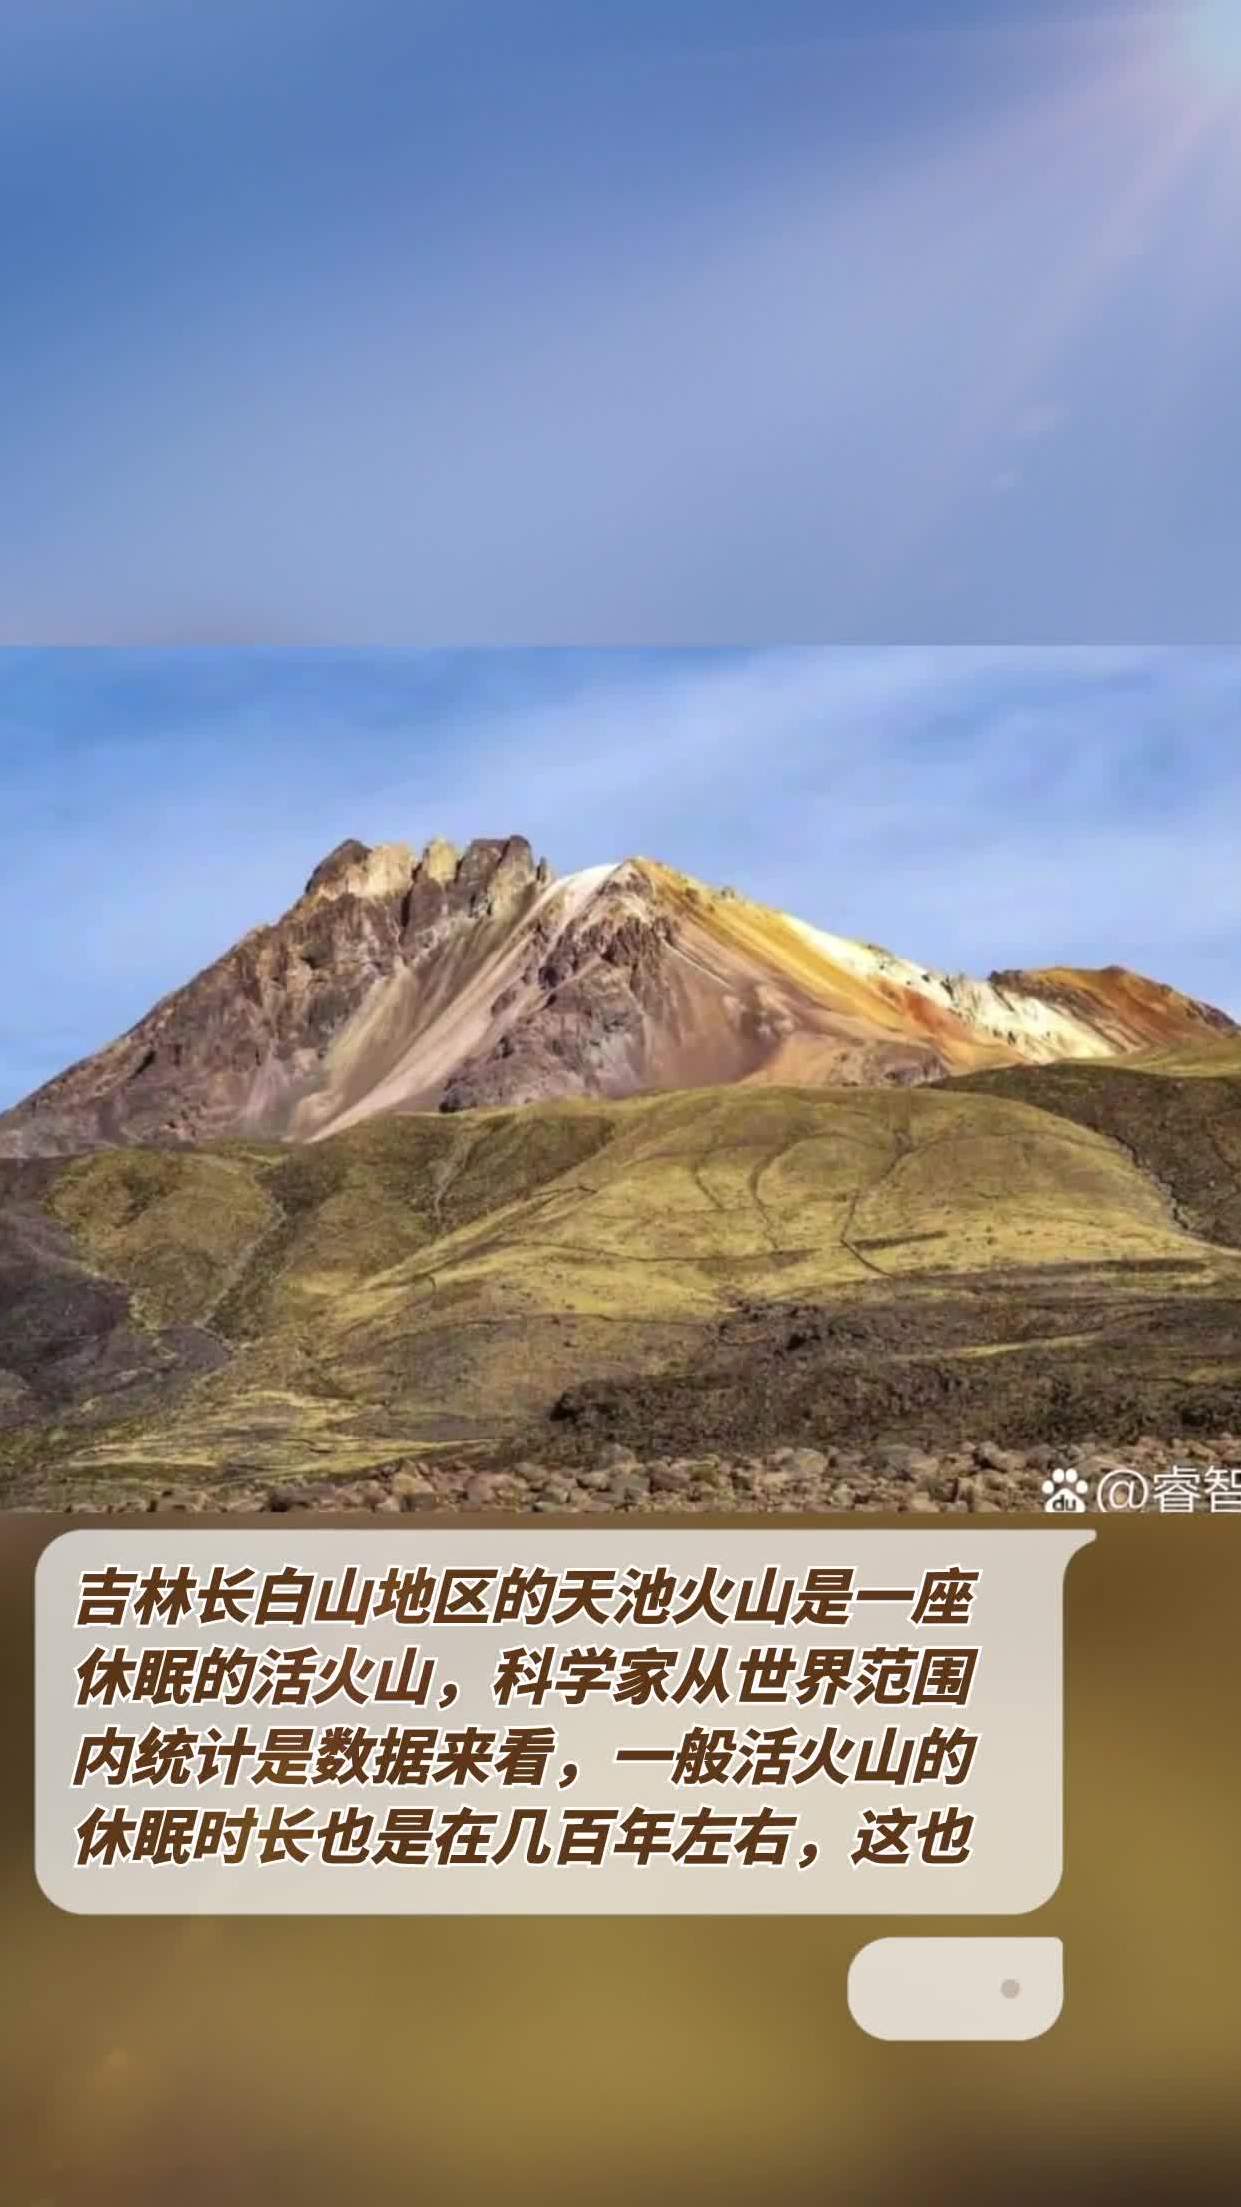 吉林长白山地区的天池火山是一座休眠的活火山,科学家从世界范围内